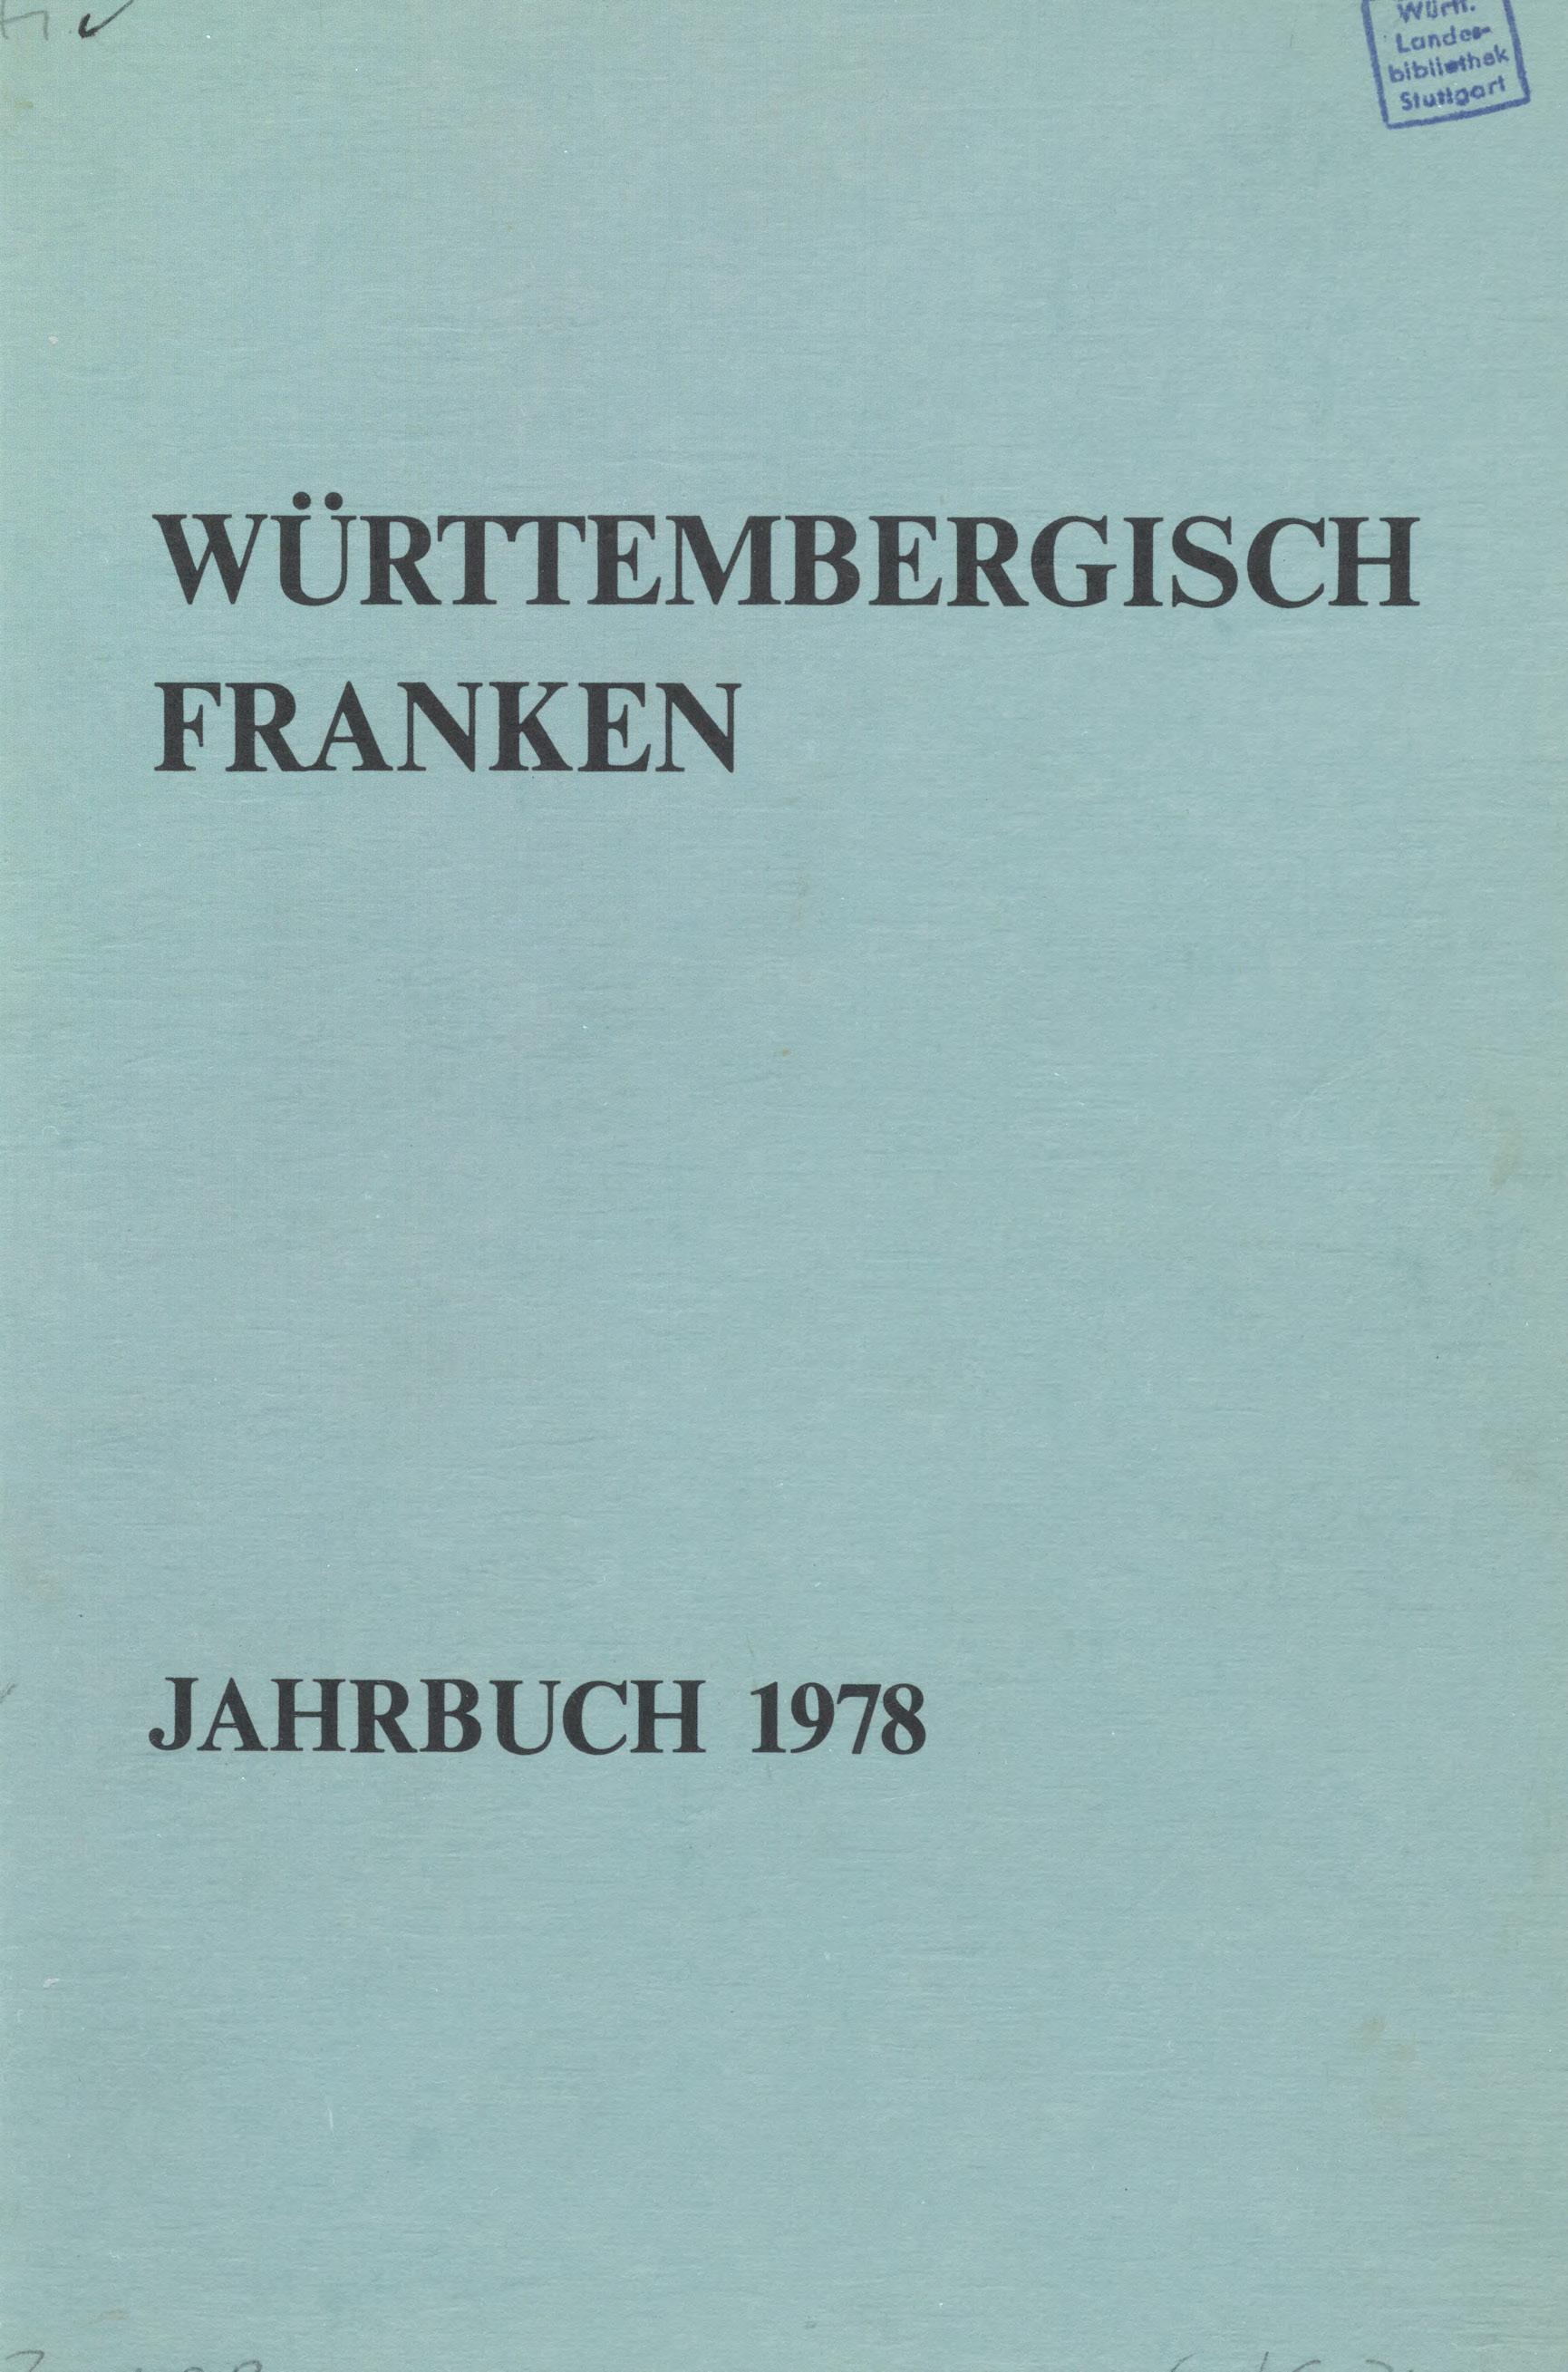                     Ansehen Bd. 62 (1978): Württembergisch Franken
                